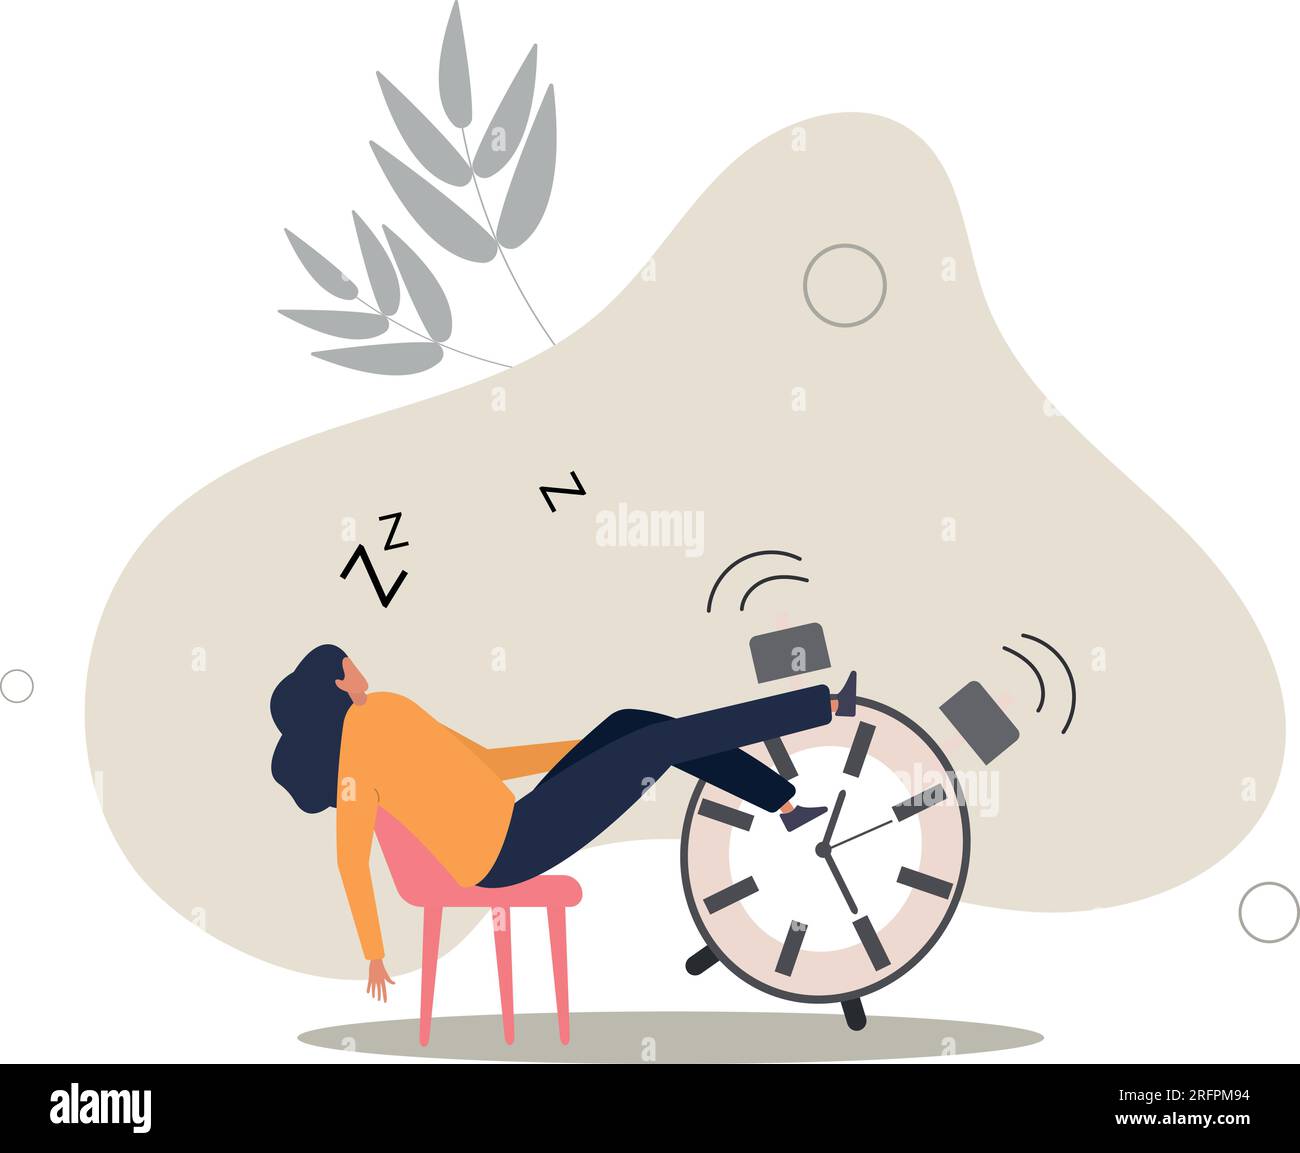 Il crollo pomeridiano, la pigrizia e il ritardo rinviano il lavoro da svolgere in seguito, la noia e il concetto di lavoro sonnolento.illustrazione vettoriale piatta. Illustrazione Vettoriale